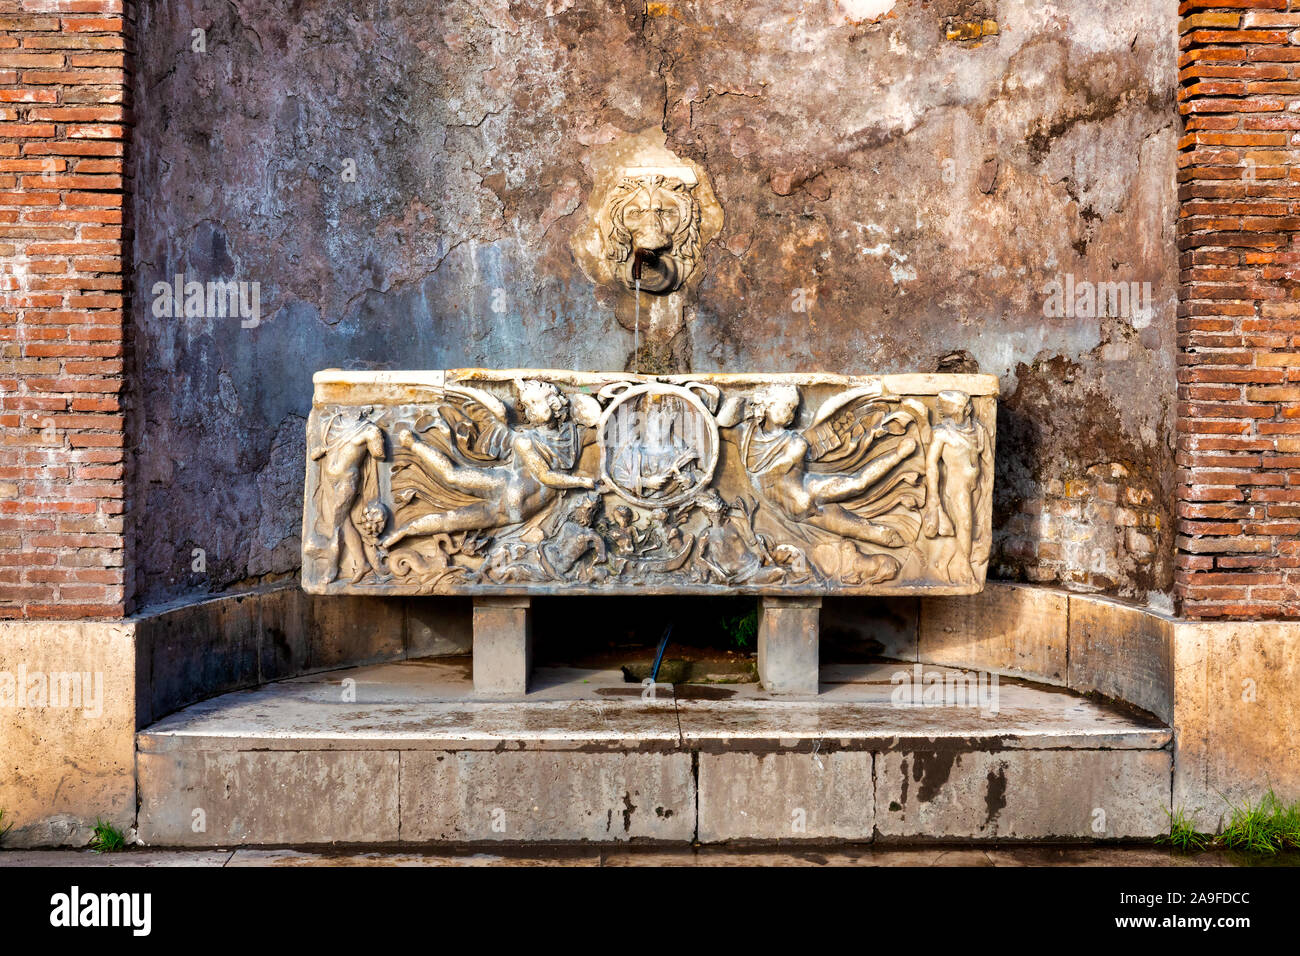 Fontaine composée d'une tête de lion et un ancien sarcophage romain sur la Piazza del Colosseo, Rome Italie Banque D'Images